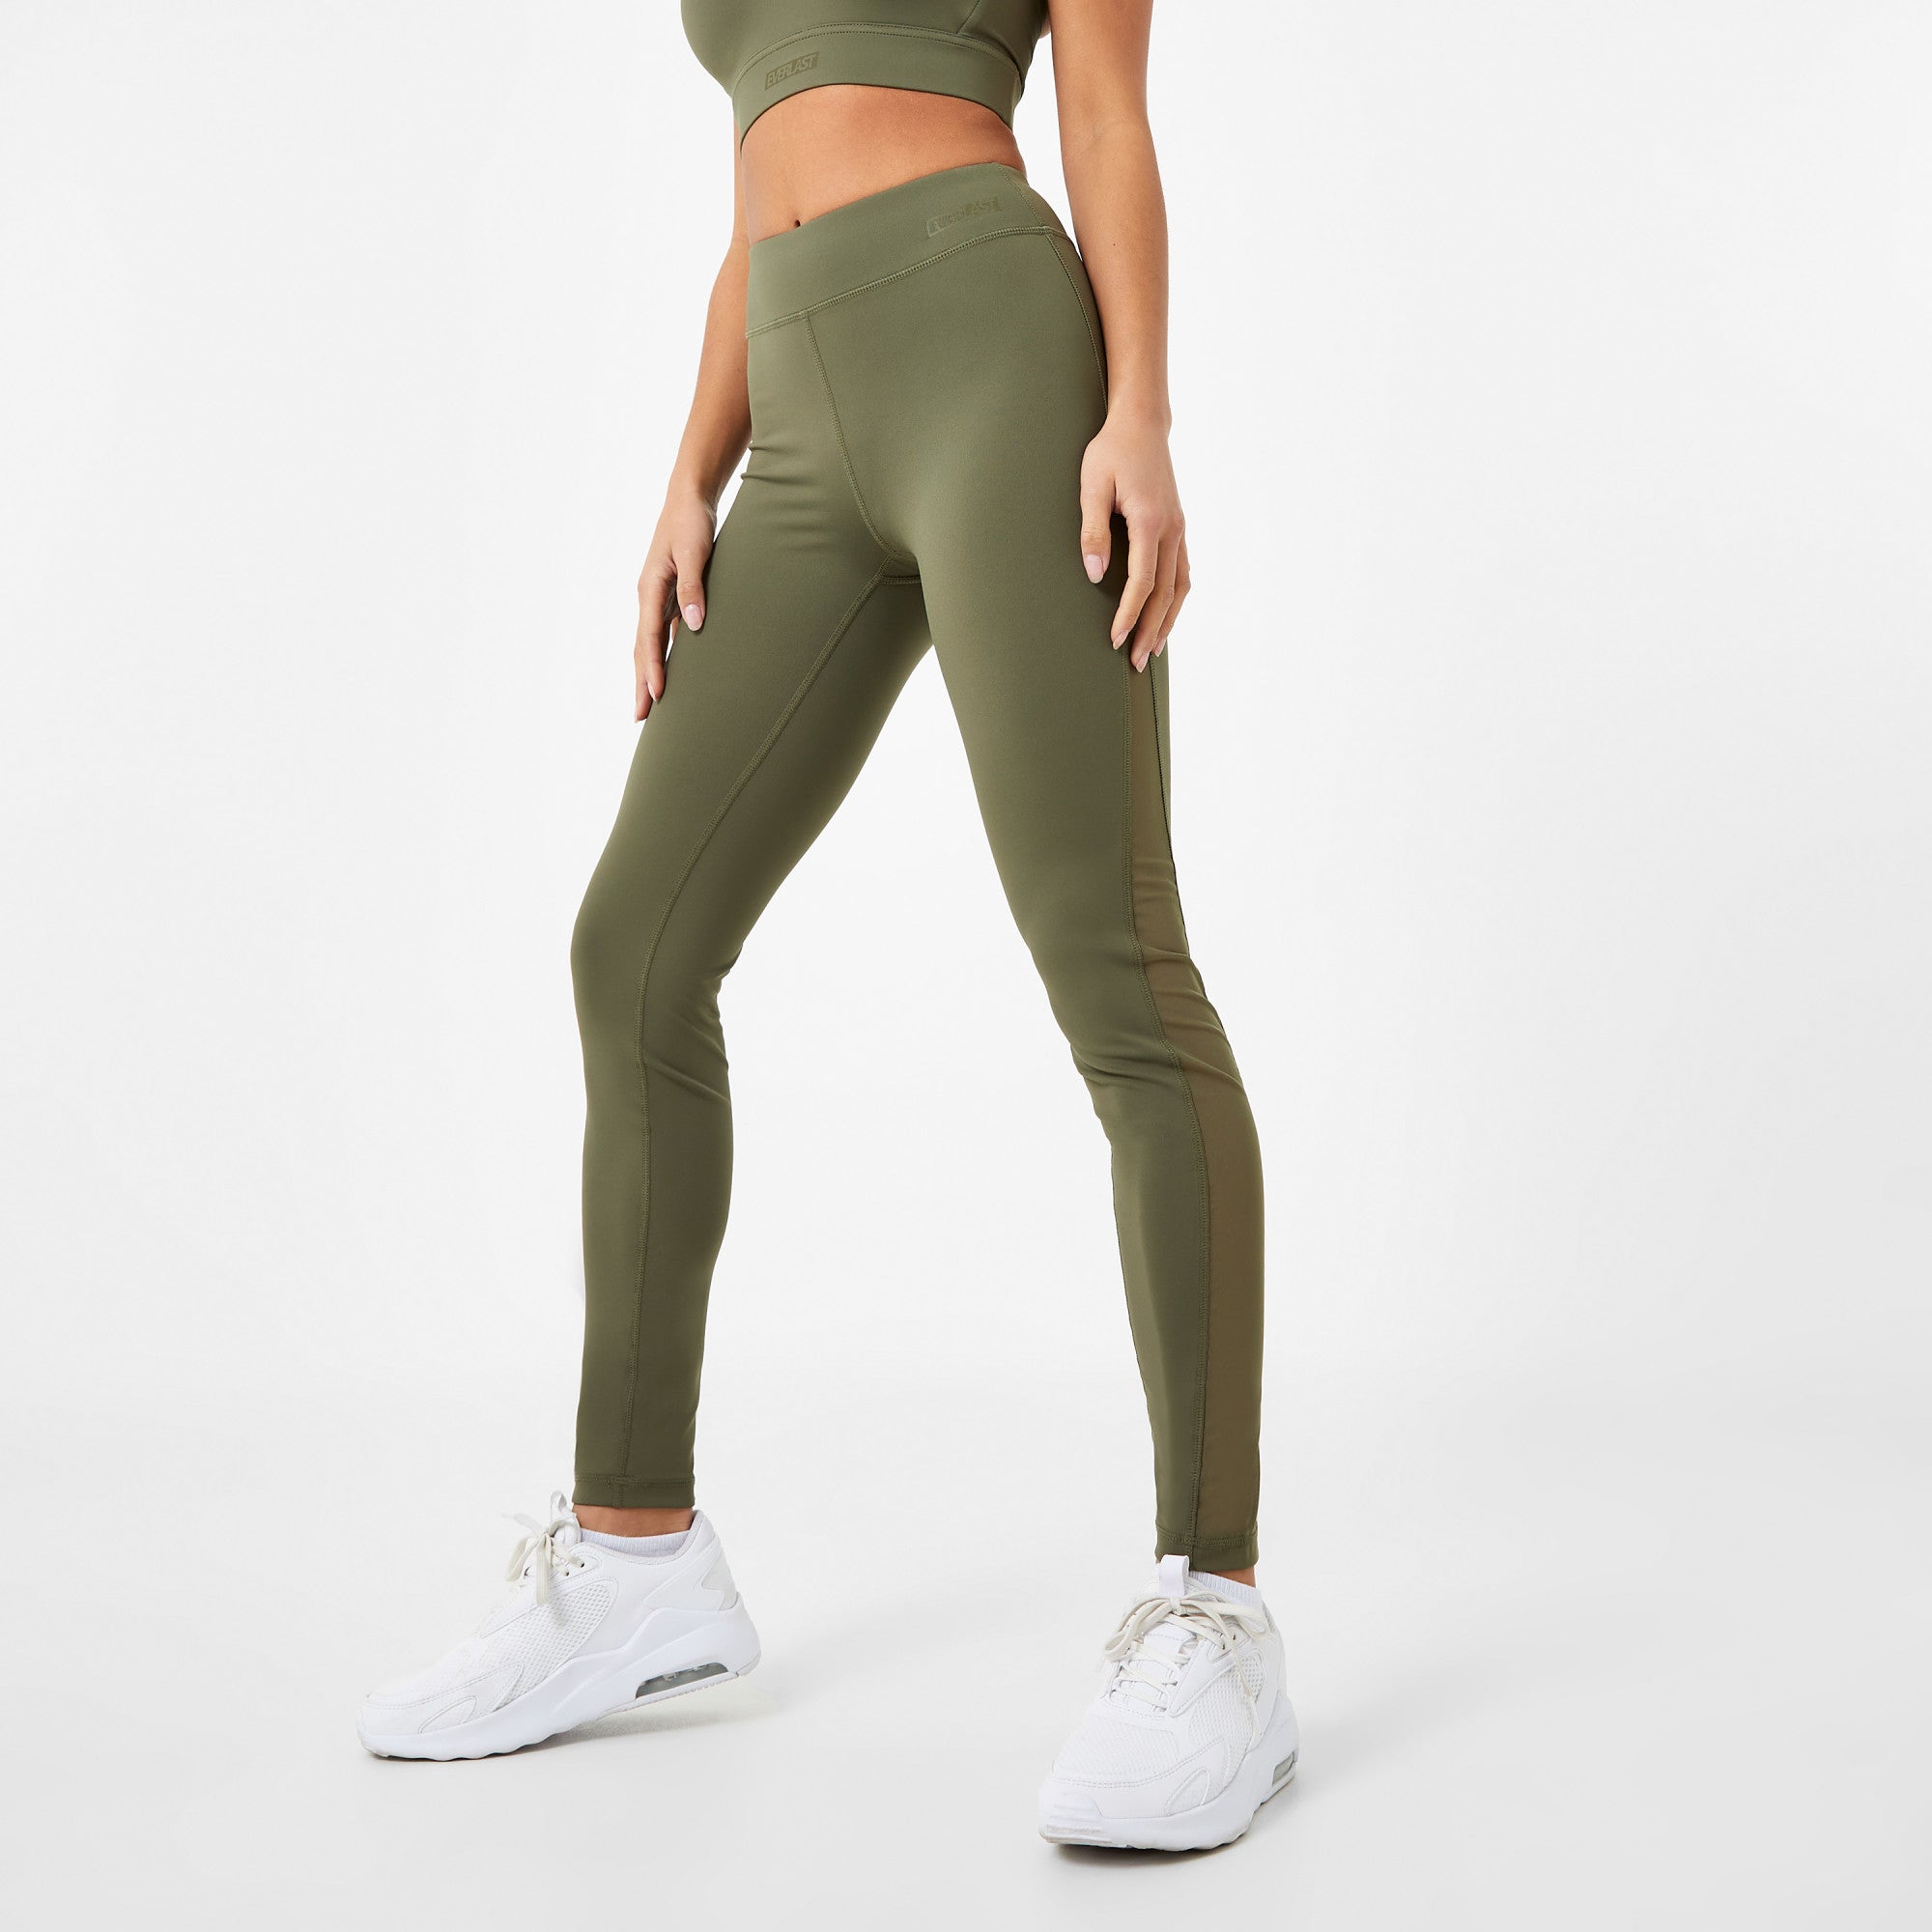 Cute Mesh Cutout Workout Leggings Mesh leggings, leggings with mesh, mesh  workout leggings, mesh panel…